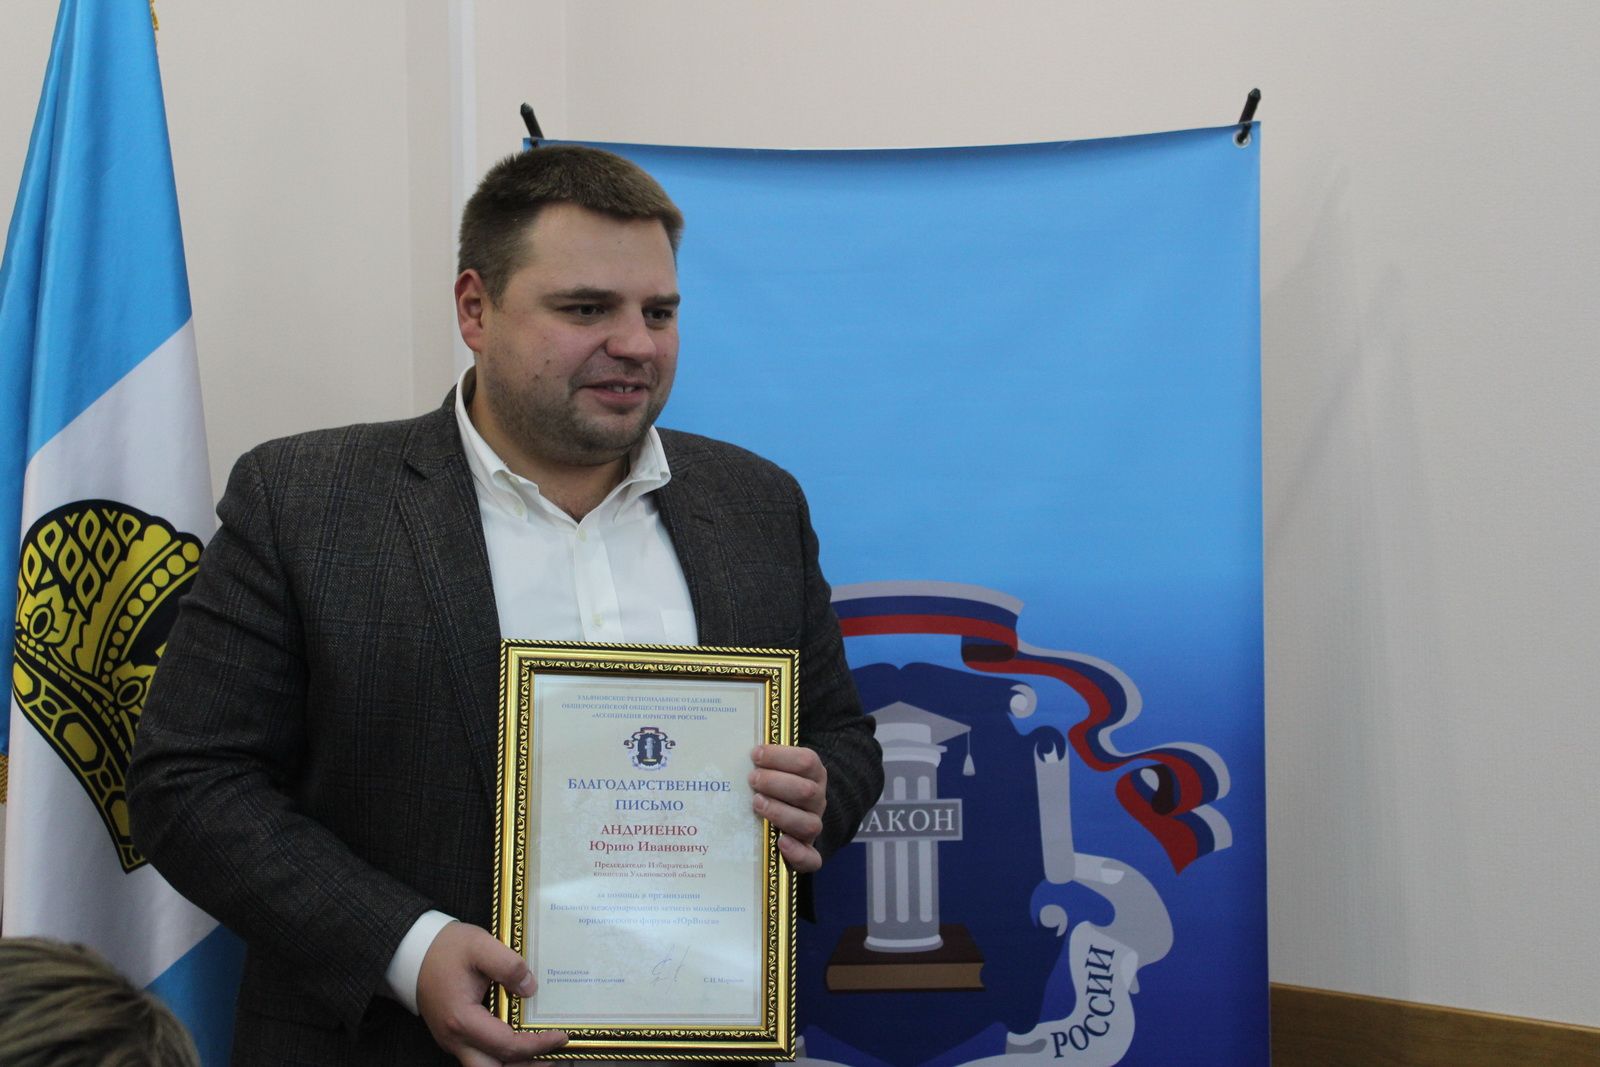 Виктор Блажеев: «Ульяновск по праву считается молодежной юридической столицей страны»